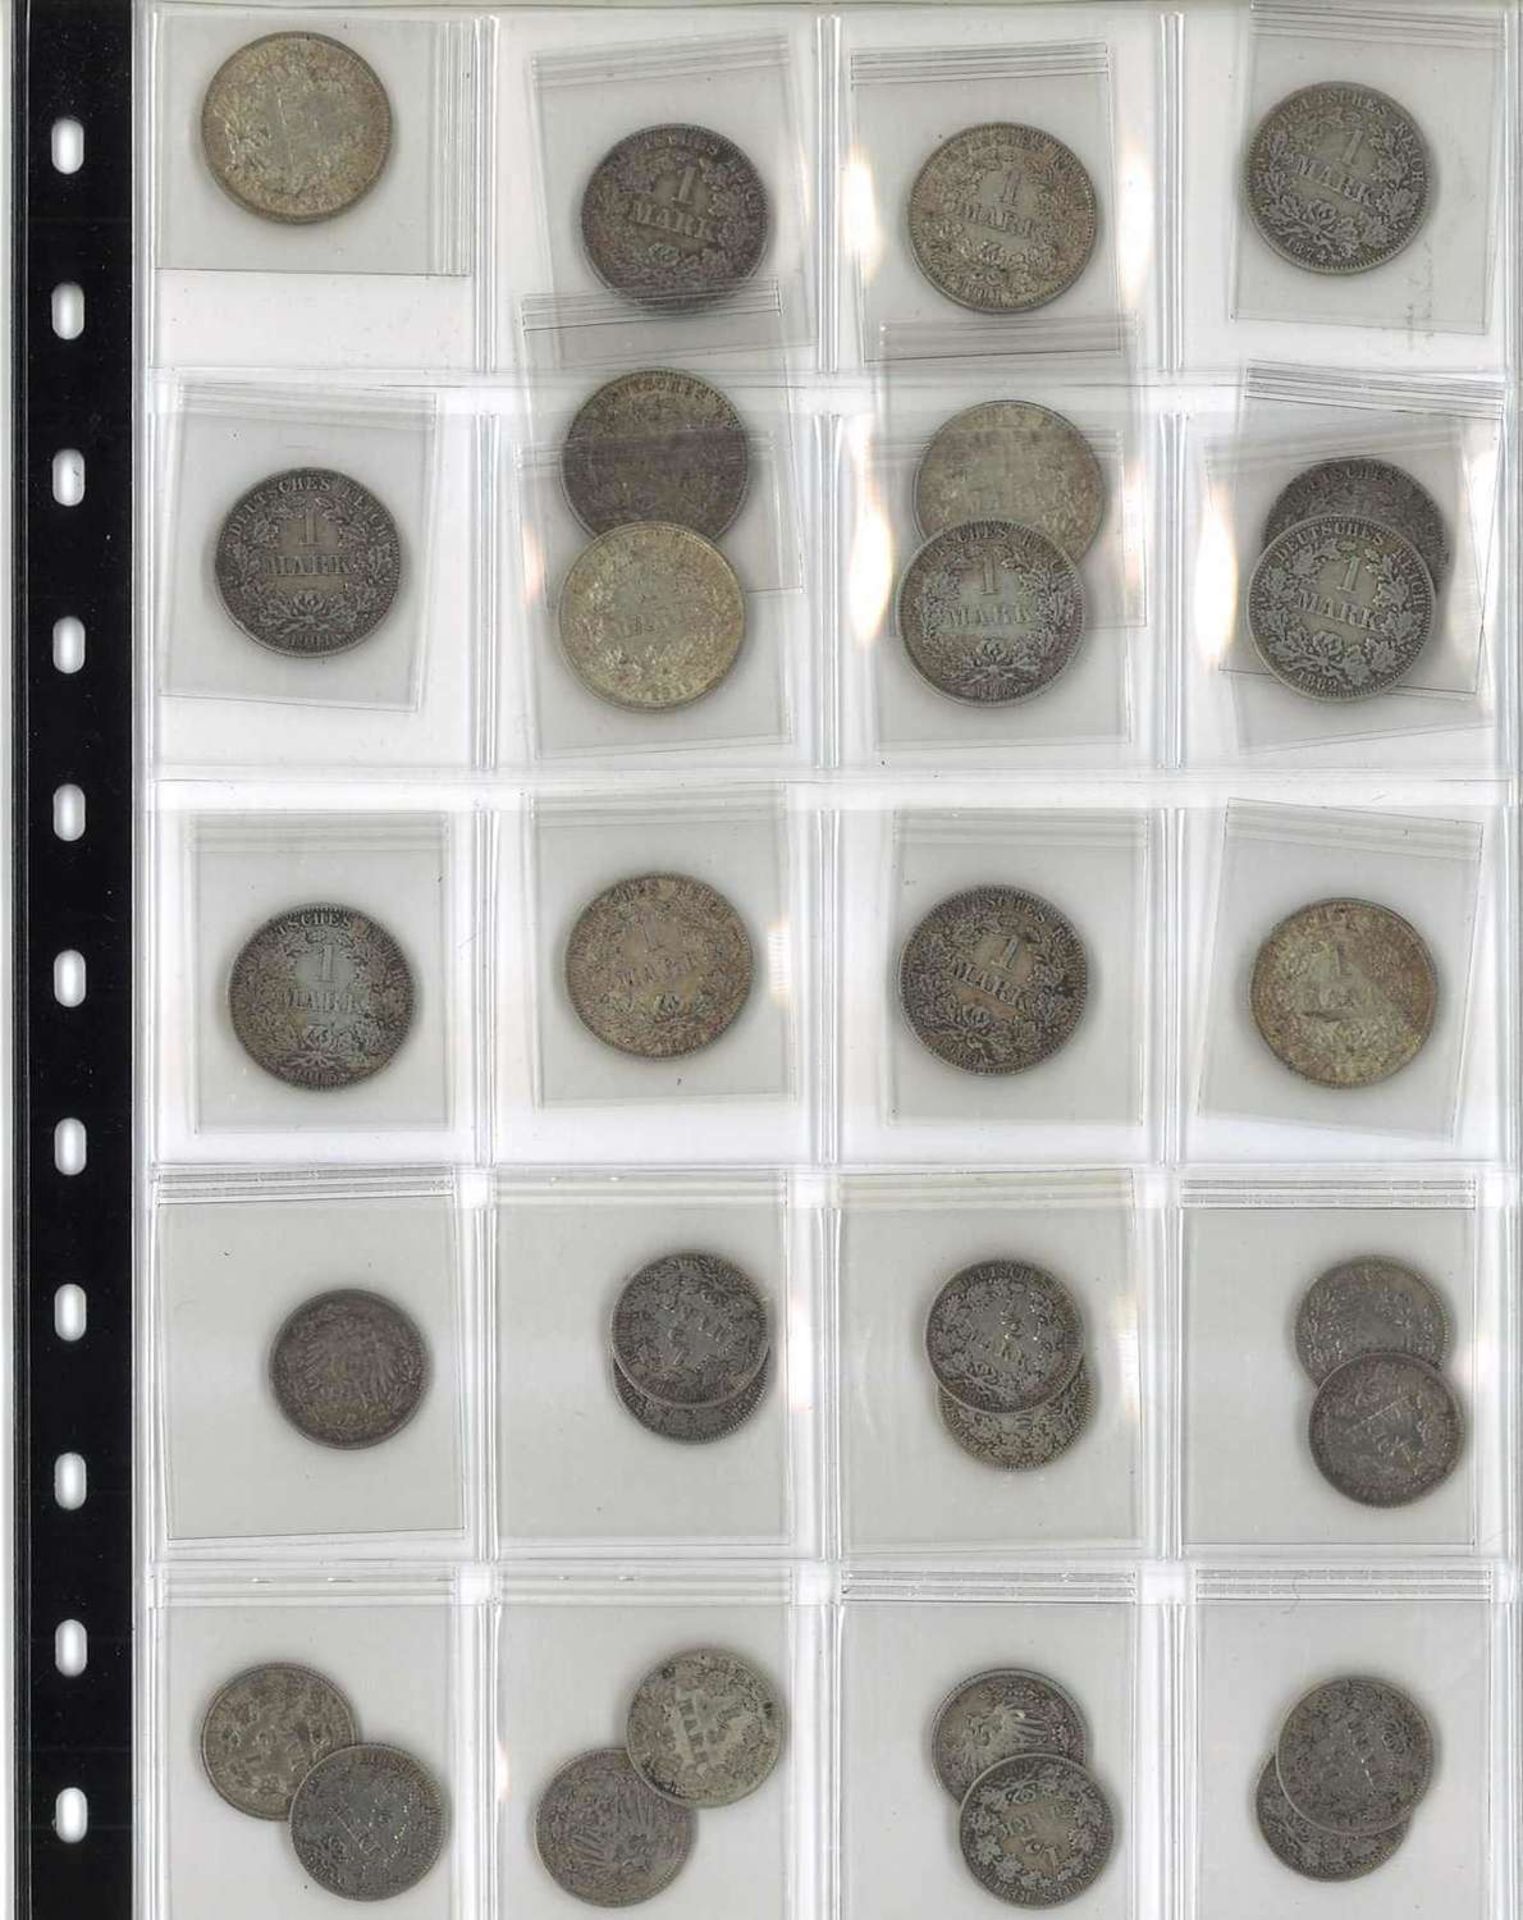 Kleine Sammlung Silbermünzen Kaiserreich, 1 und 1/2 Mark Stücke. Insgesamt 15x1 Mark und 12x 1/2